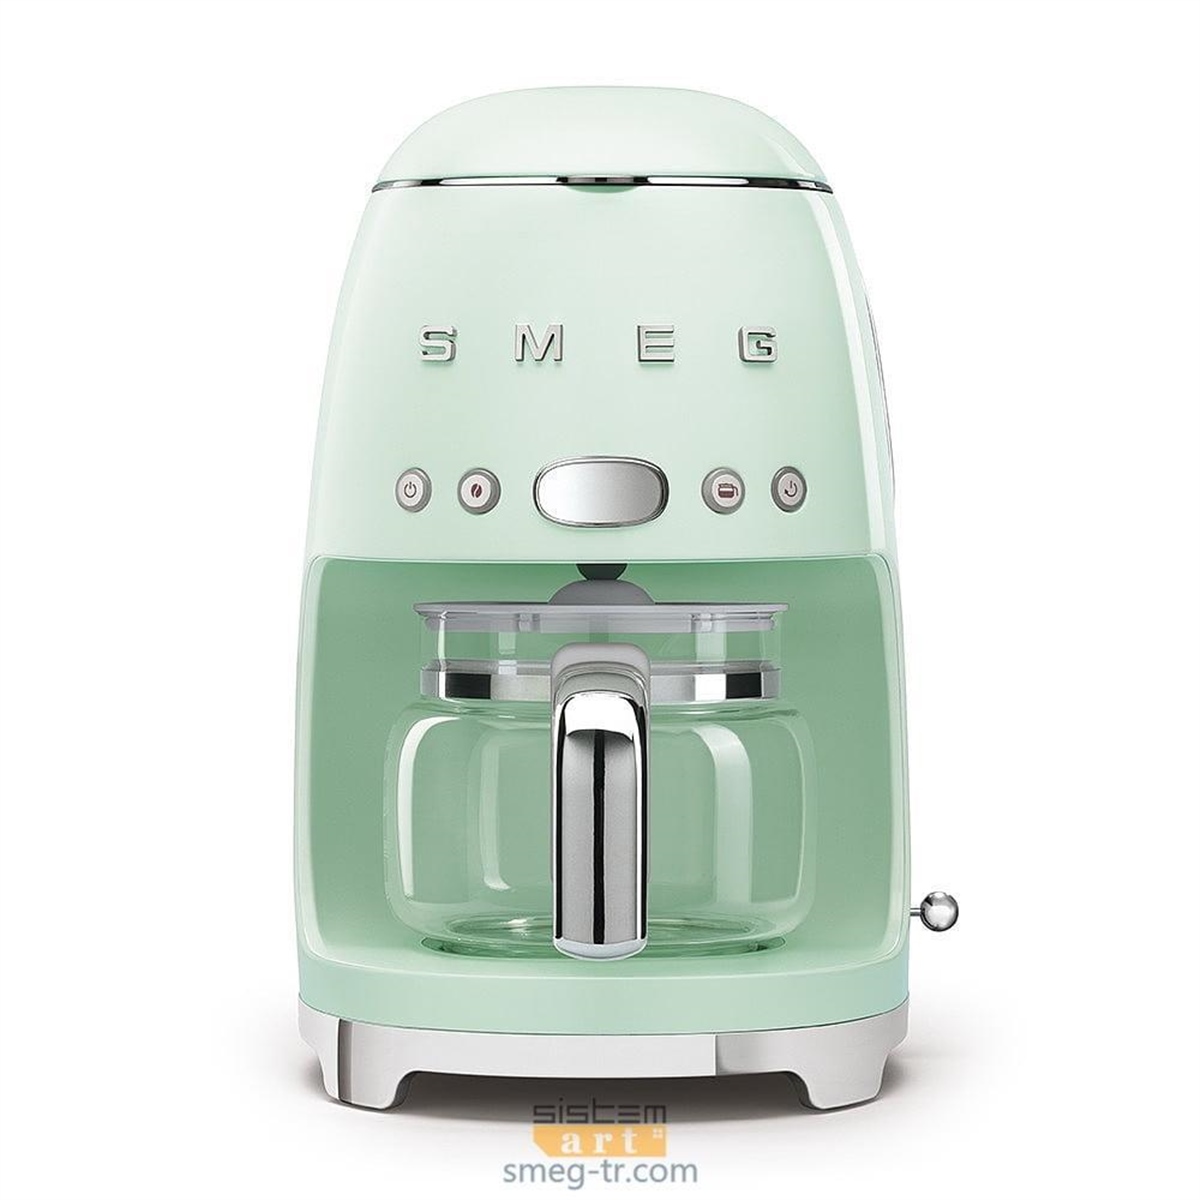 Smeg - Filtre Kahve Makinesi 50'S Style Pastel Yeşil